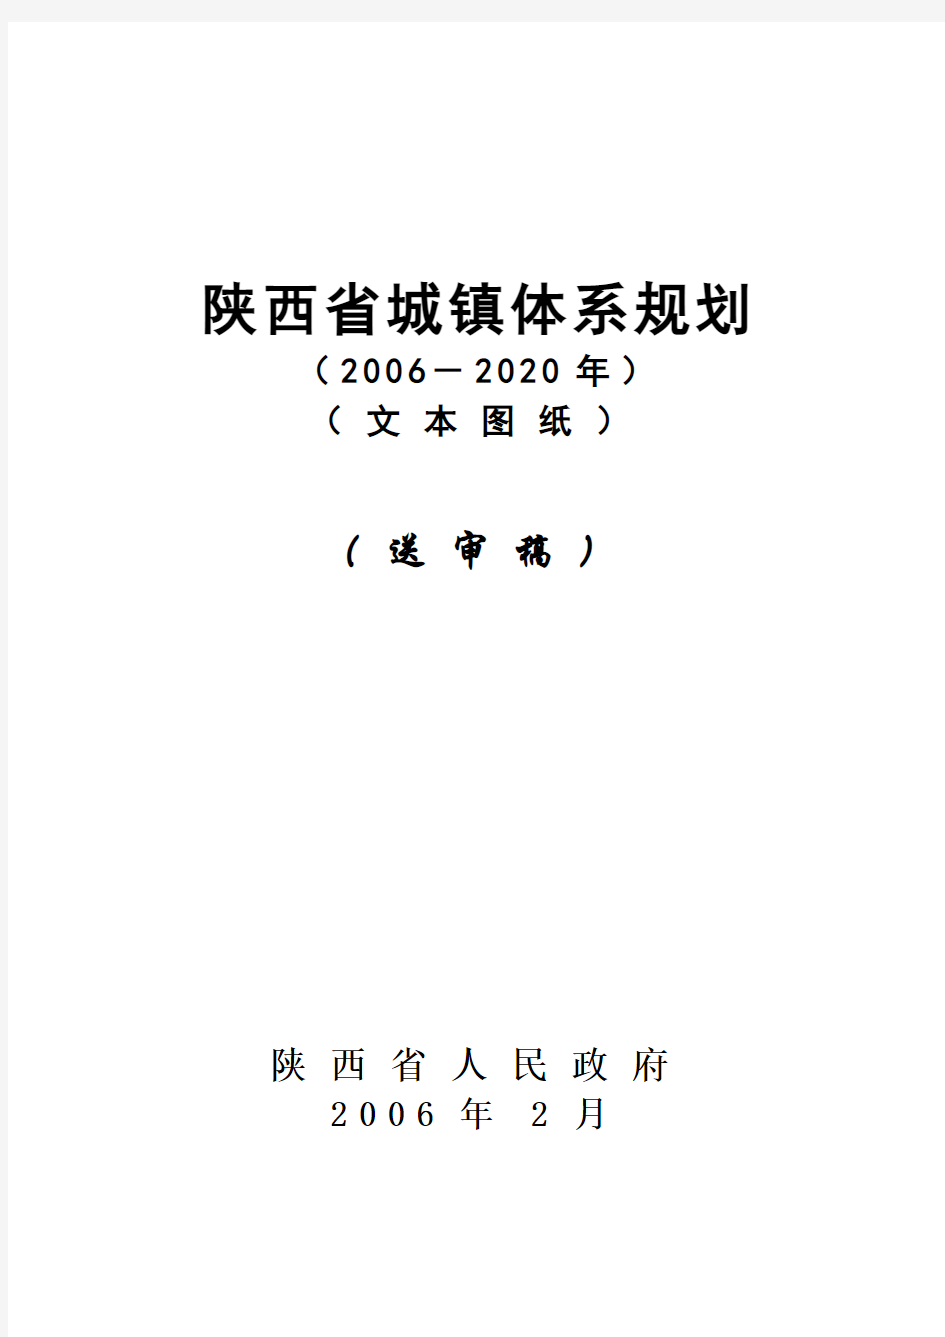 中国陕西省城镇体系规划(2006-2020年)